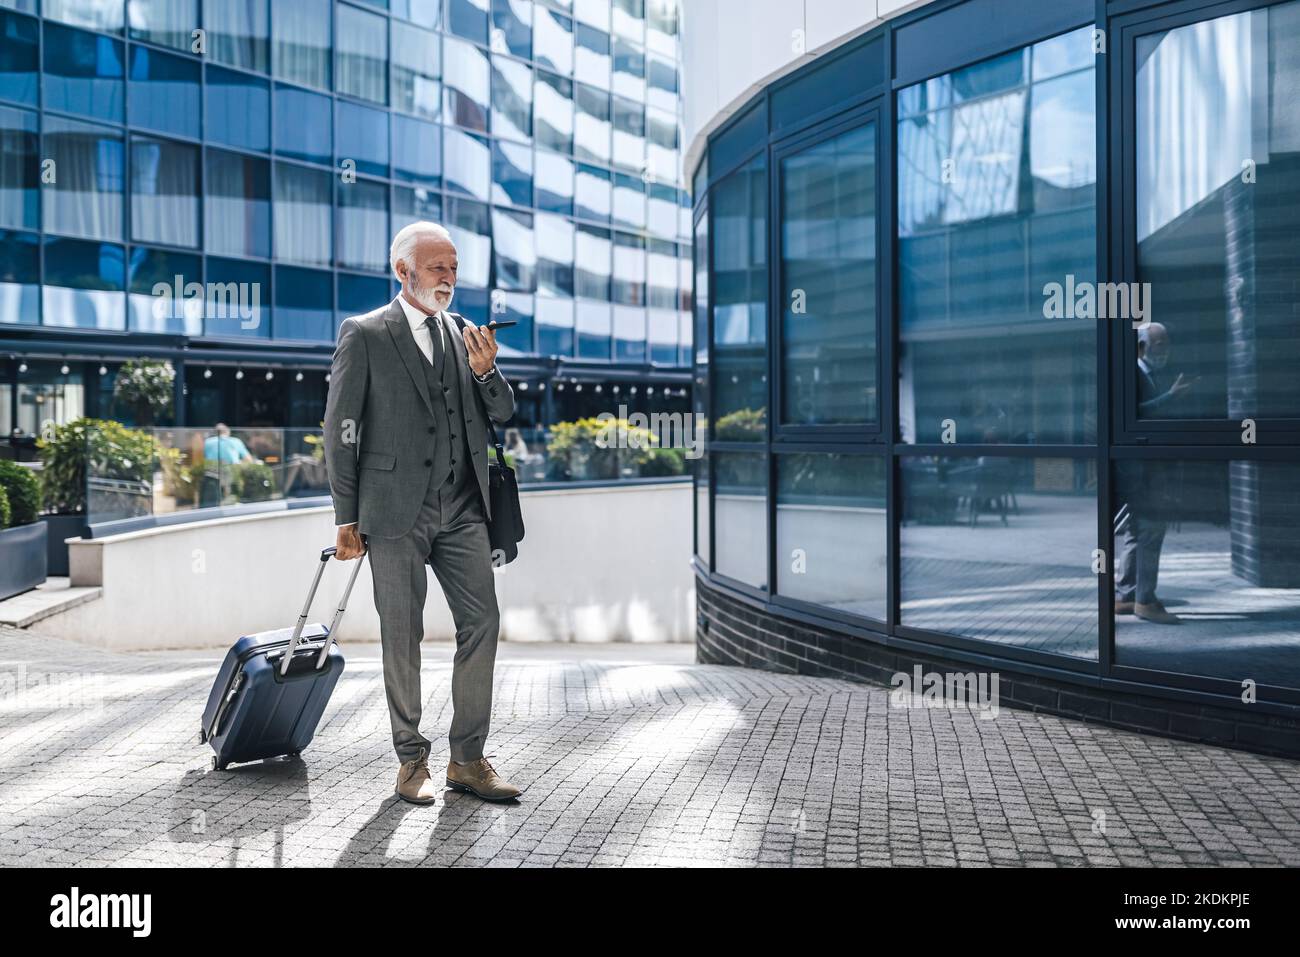 Homme âgé professionnel avec valise parlant à travers haut-parleur sur téléphone portable. Homme d'affaires senior vêtu d'un costume qui marche sur le sentier contre le bobu de bureau Banque D'Images